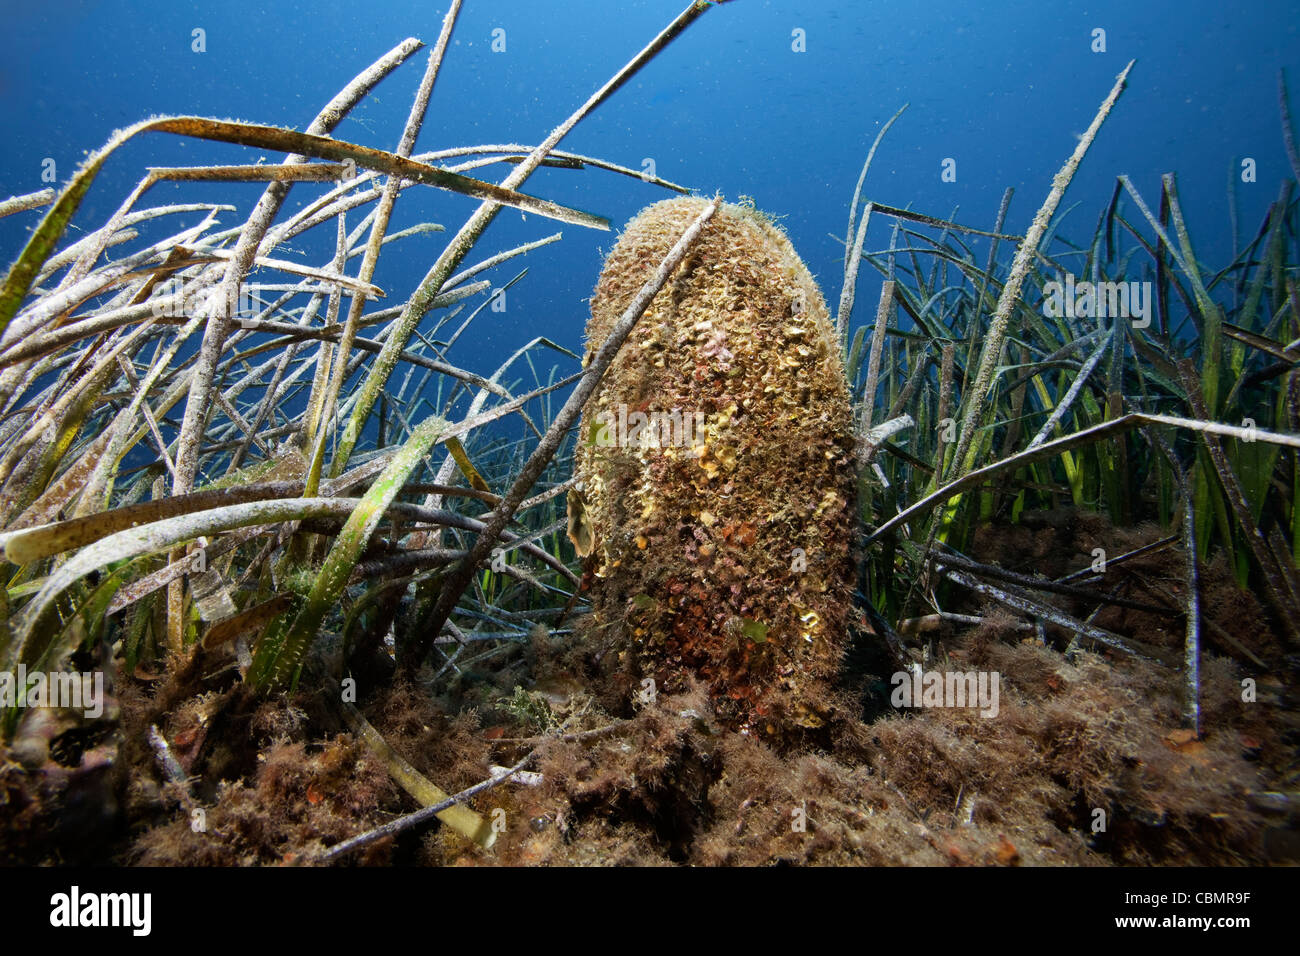 Pen shell in Seagrass Meadows, Pinna Nobilis, Posidonia oceanica, Ischia, Mediterranean Sea, Italy Stock Photo